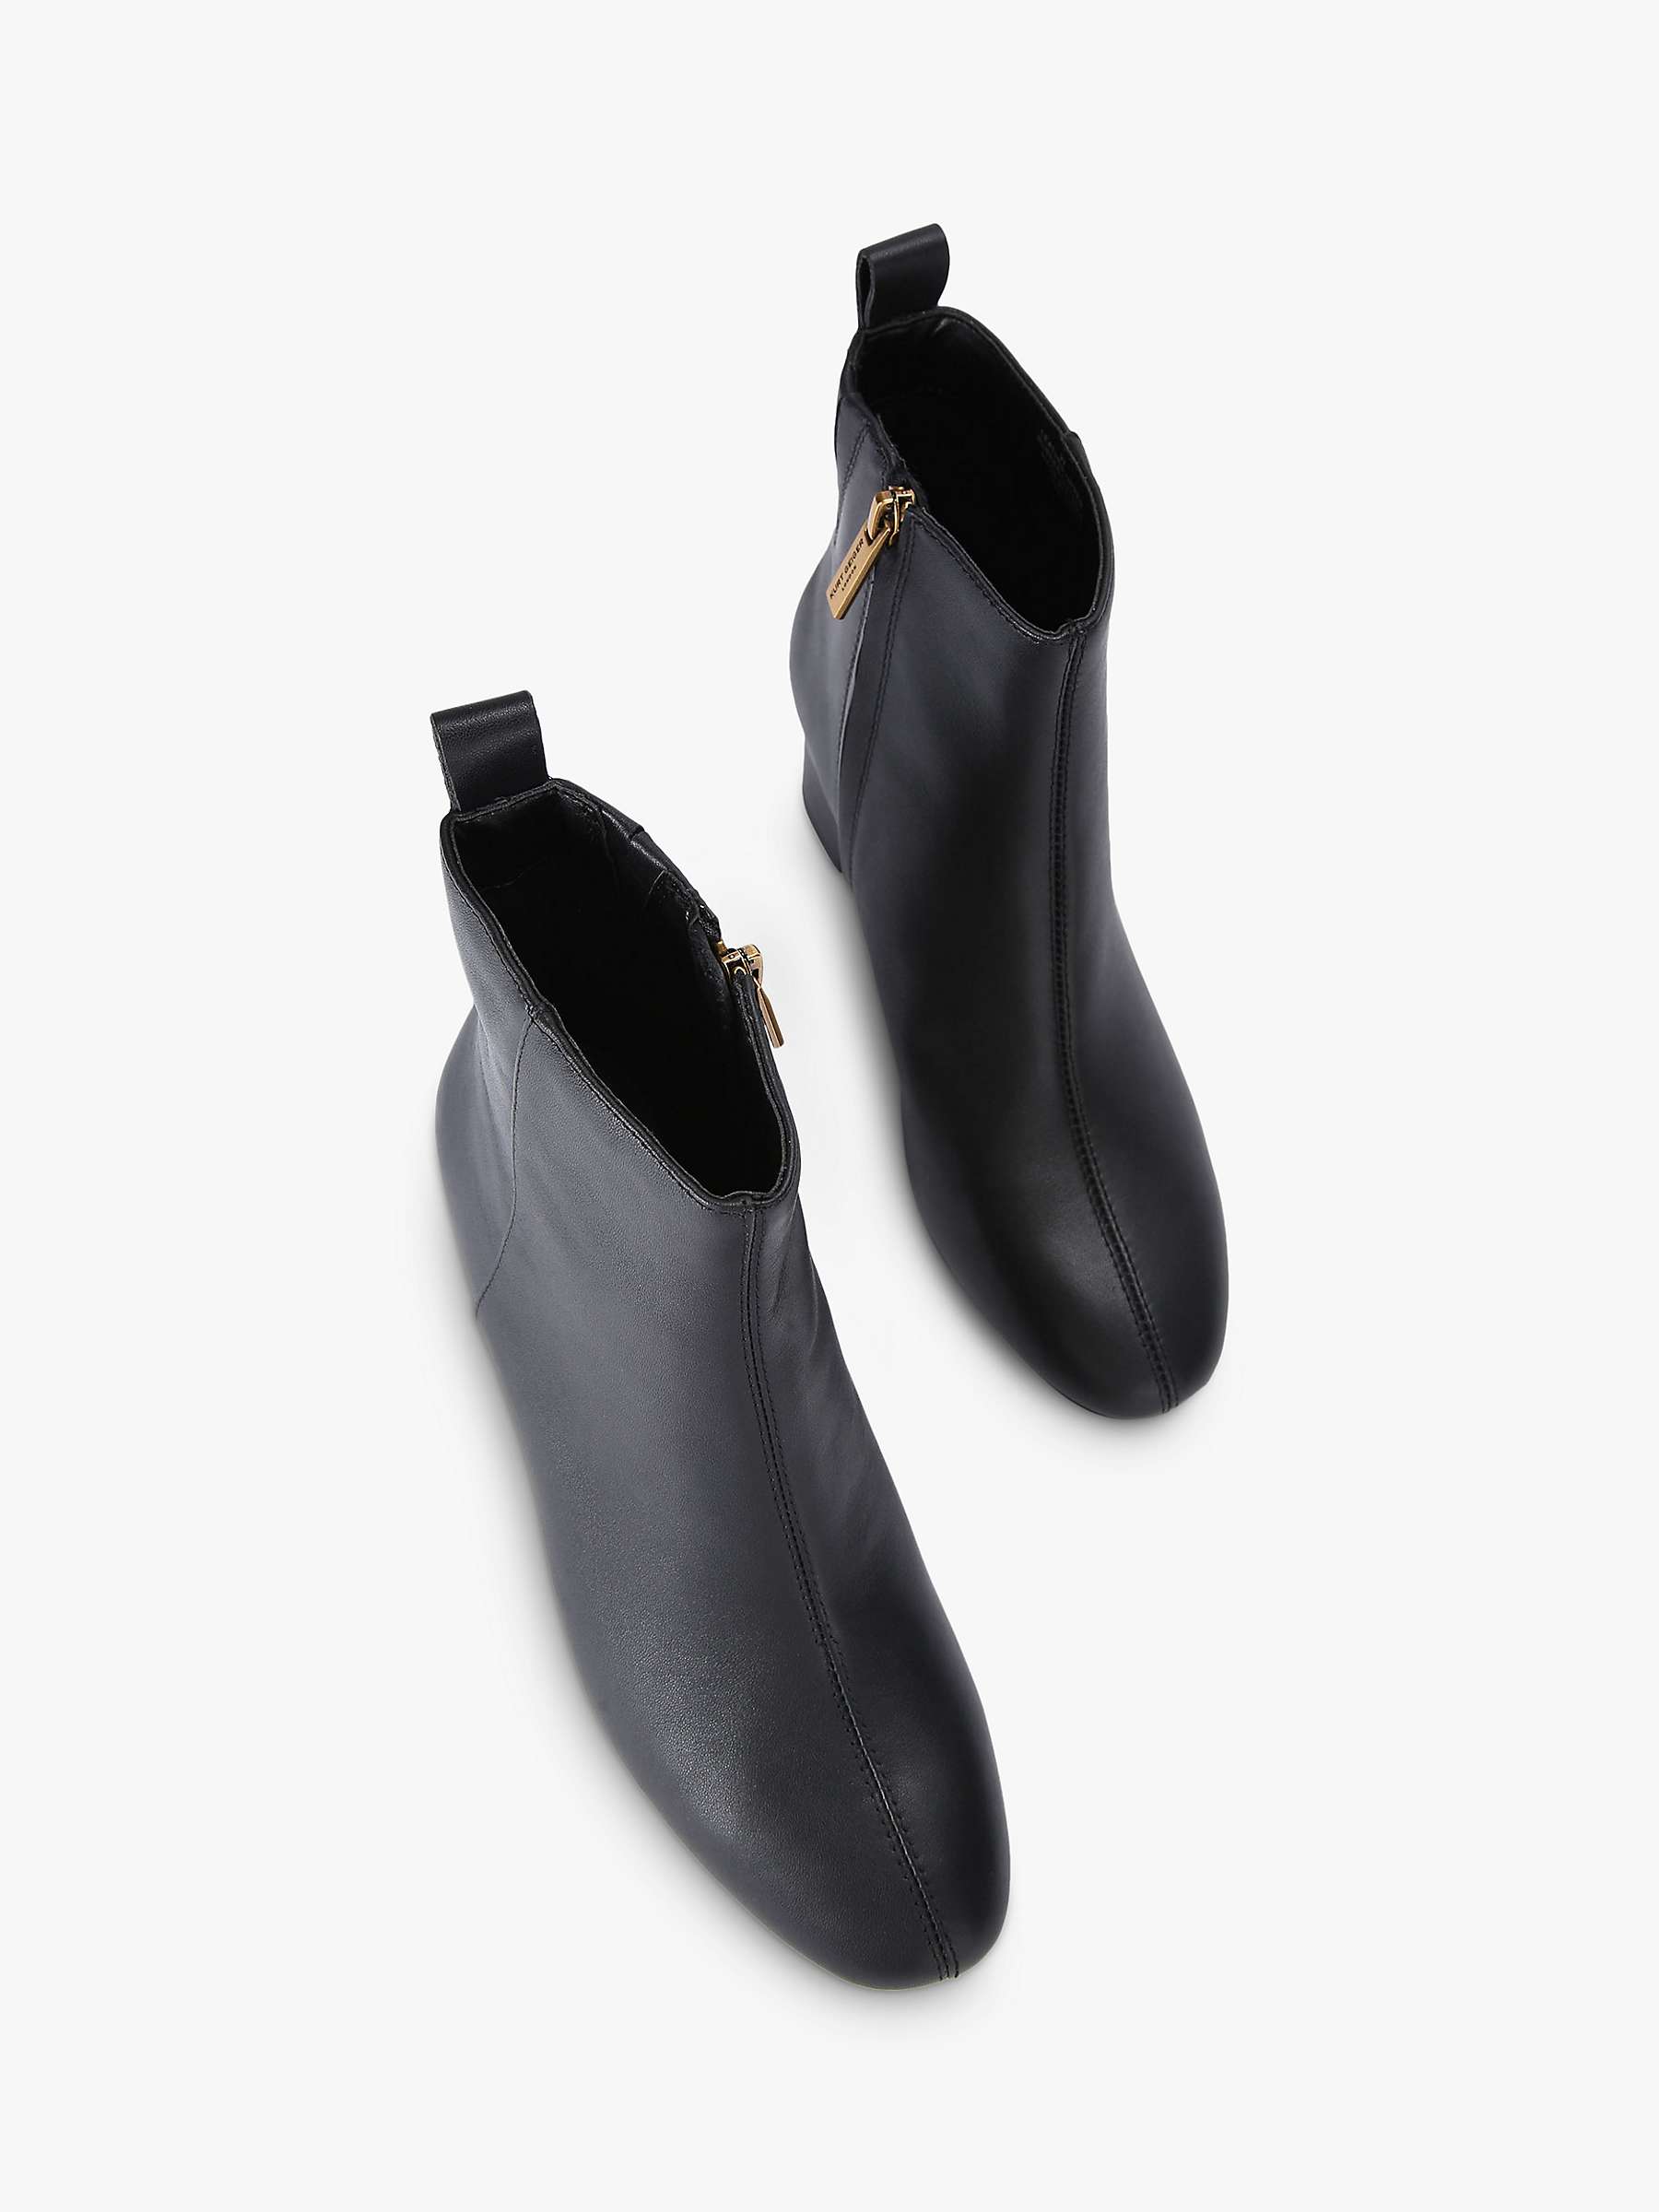 Buy Kurt Geiger London Elmer 2 Leather Ankle Boots, Black Online at johnlewis.com